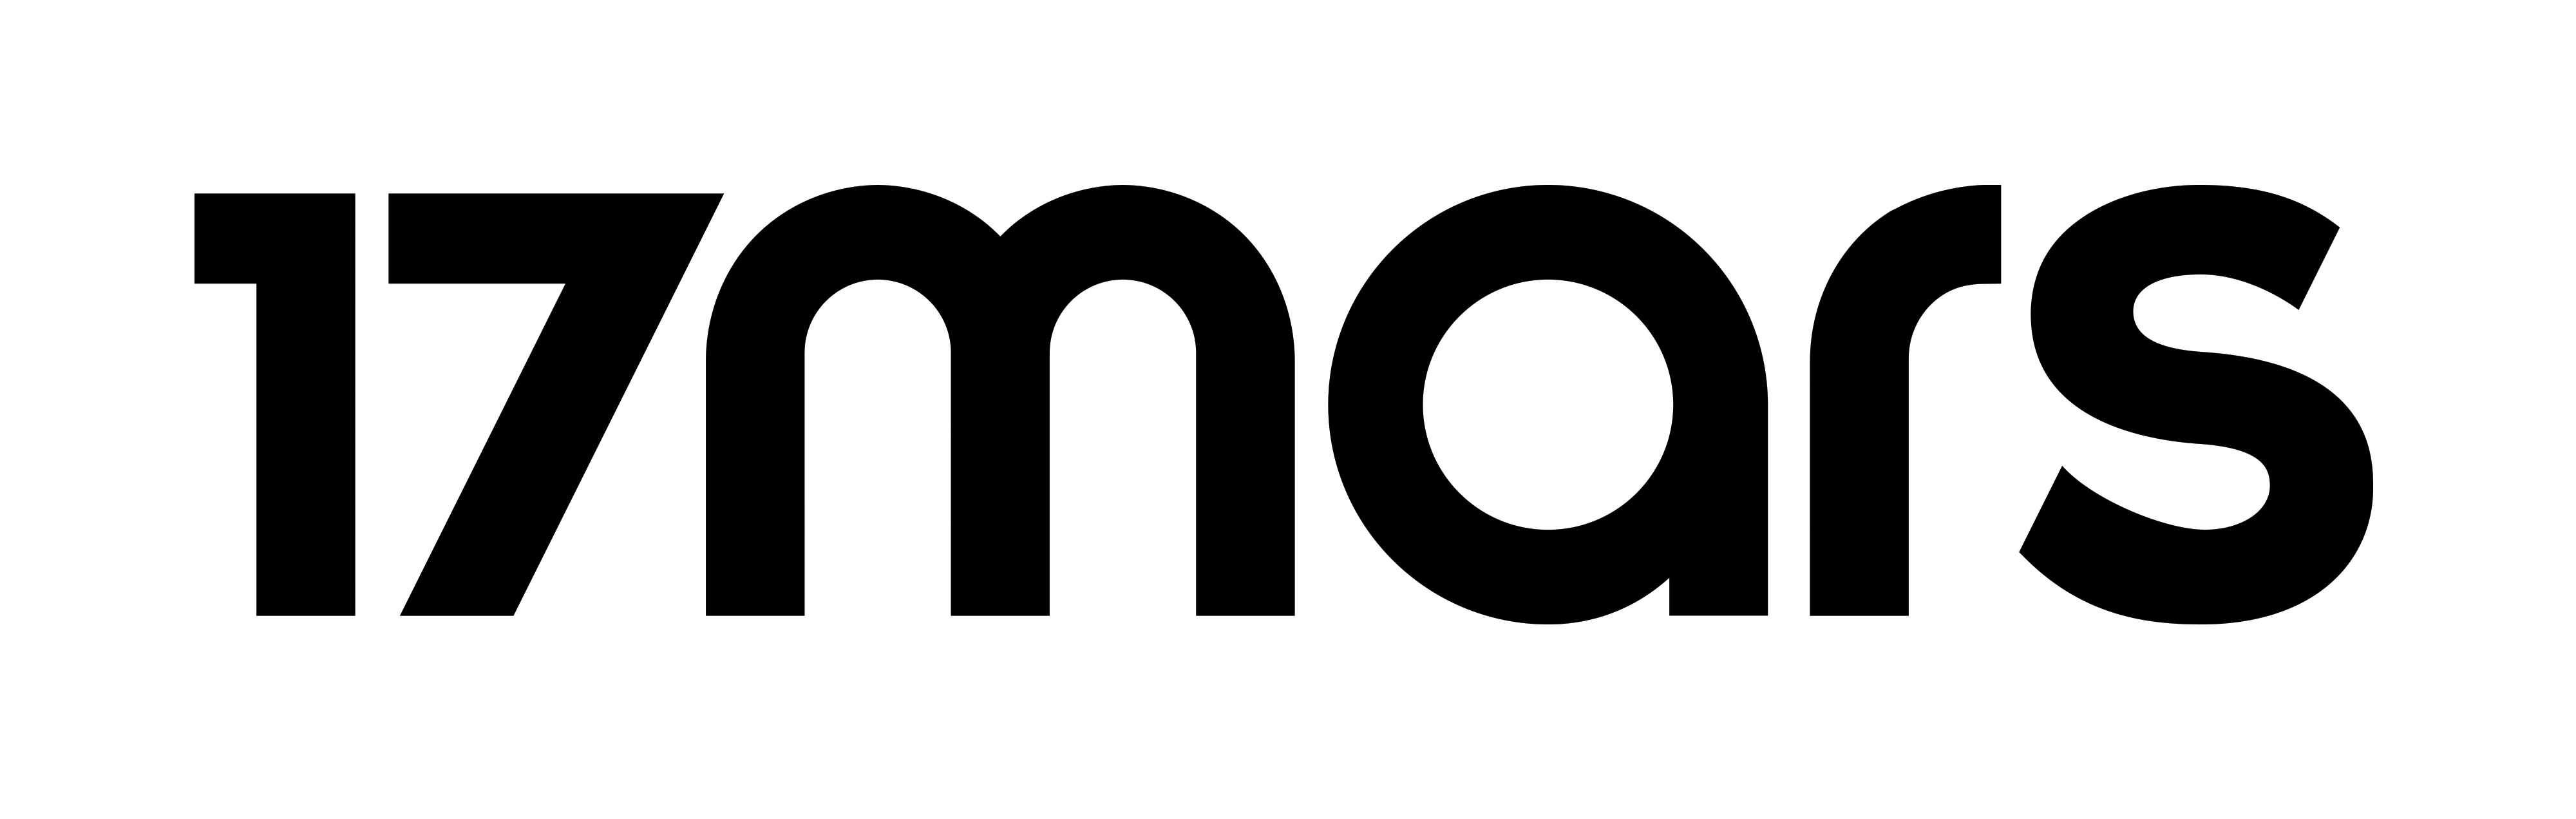 17. Марс сервис логотип.